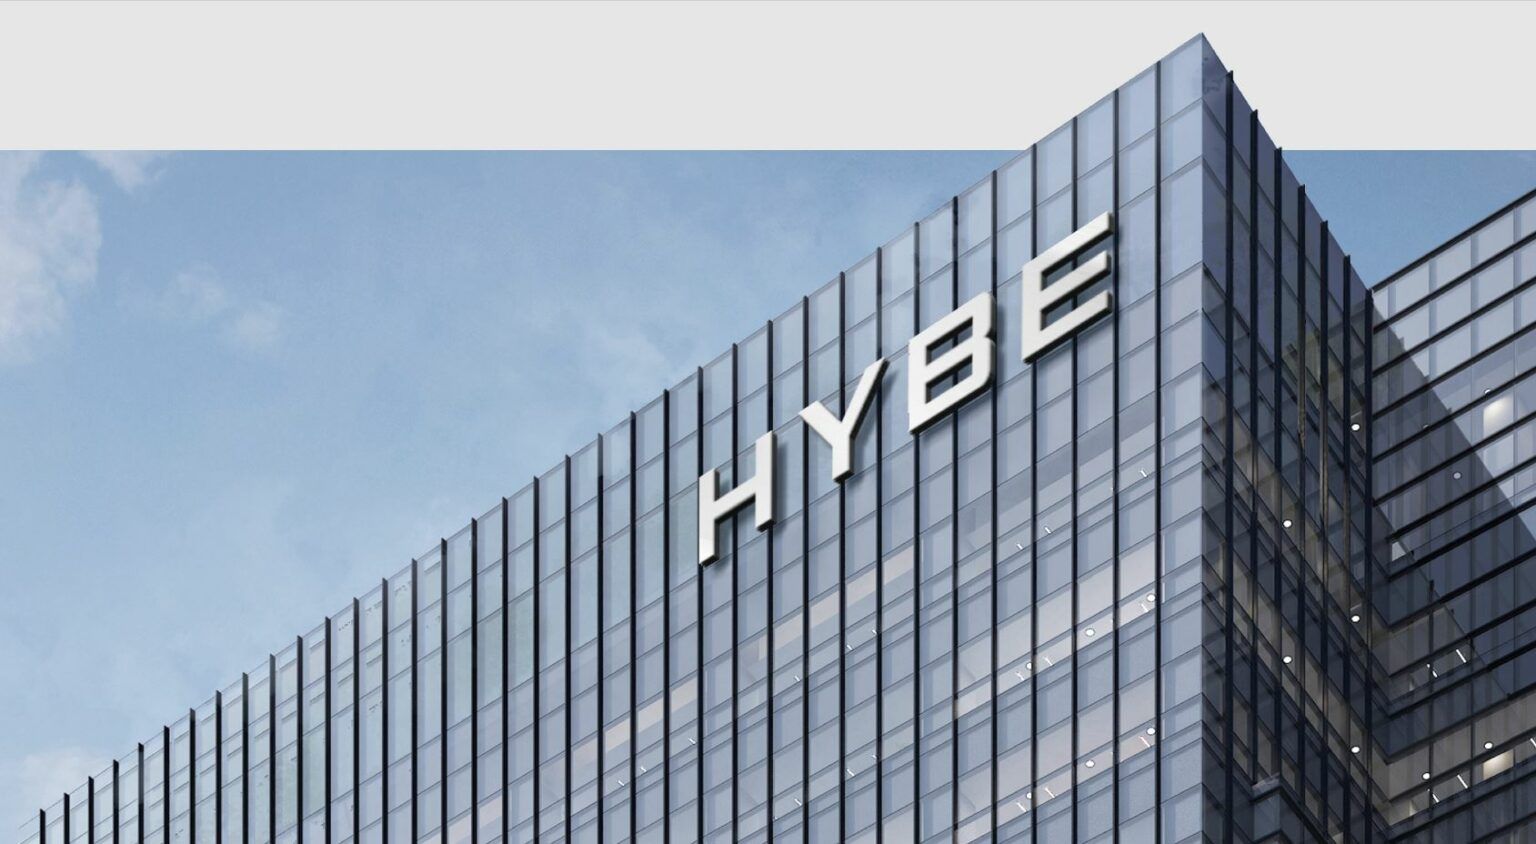 Artistas da HYBE Labels, a grande empresa de k-pop